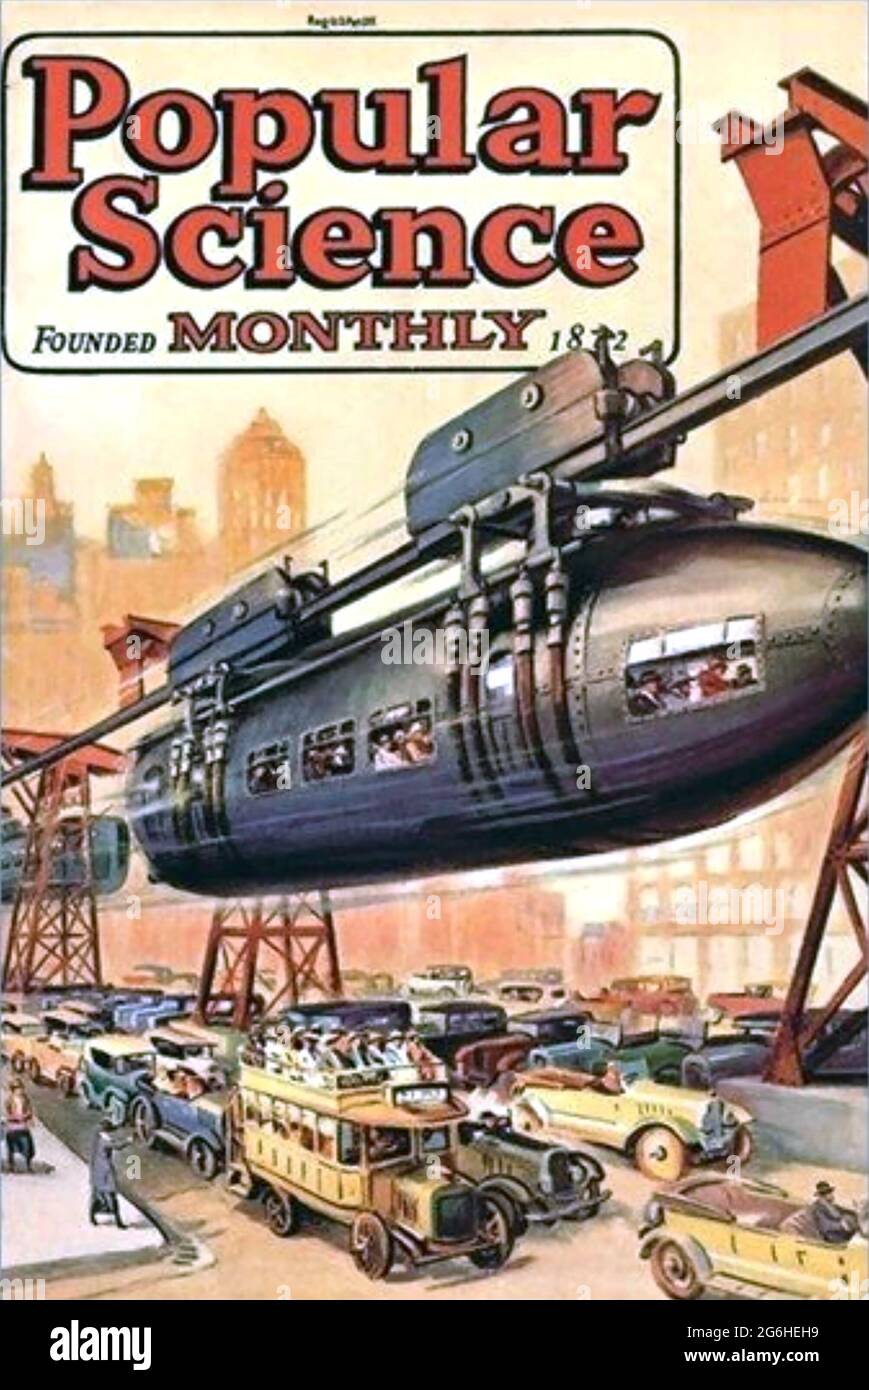 LA SCIENCE POPULAIRE un magazine trimestriel américain, publié pour la première fois en 1872. Couvrir à partir d'environ 1910 montrant un monorail battant l'embouteillage Banque D'Images